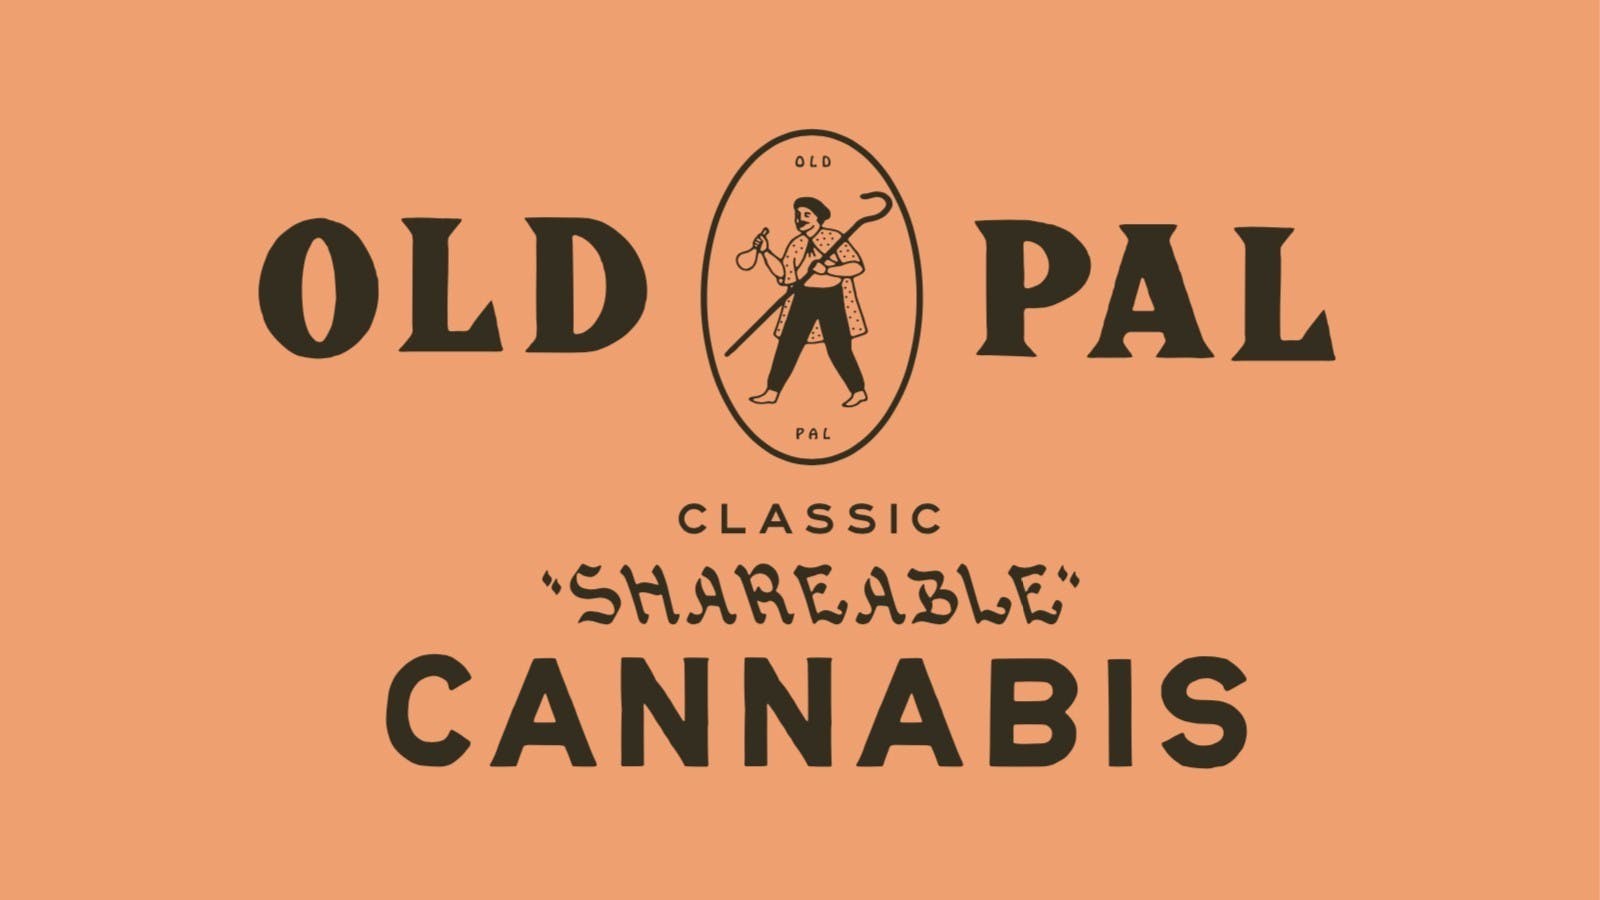 marijuana-dispensaries-herbarium-la-in-los-angeles-sponge-cake-by-old-pal